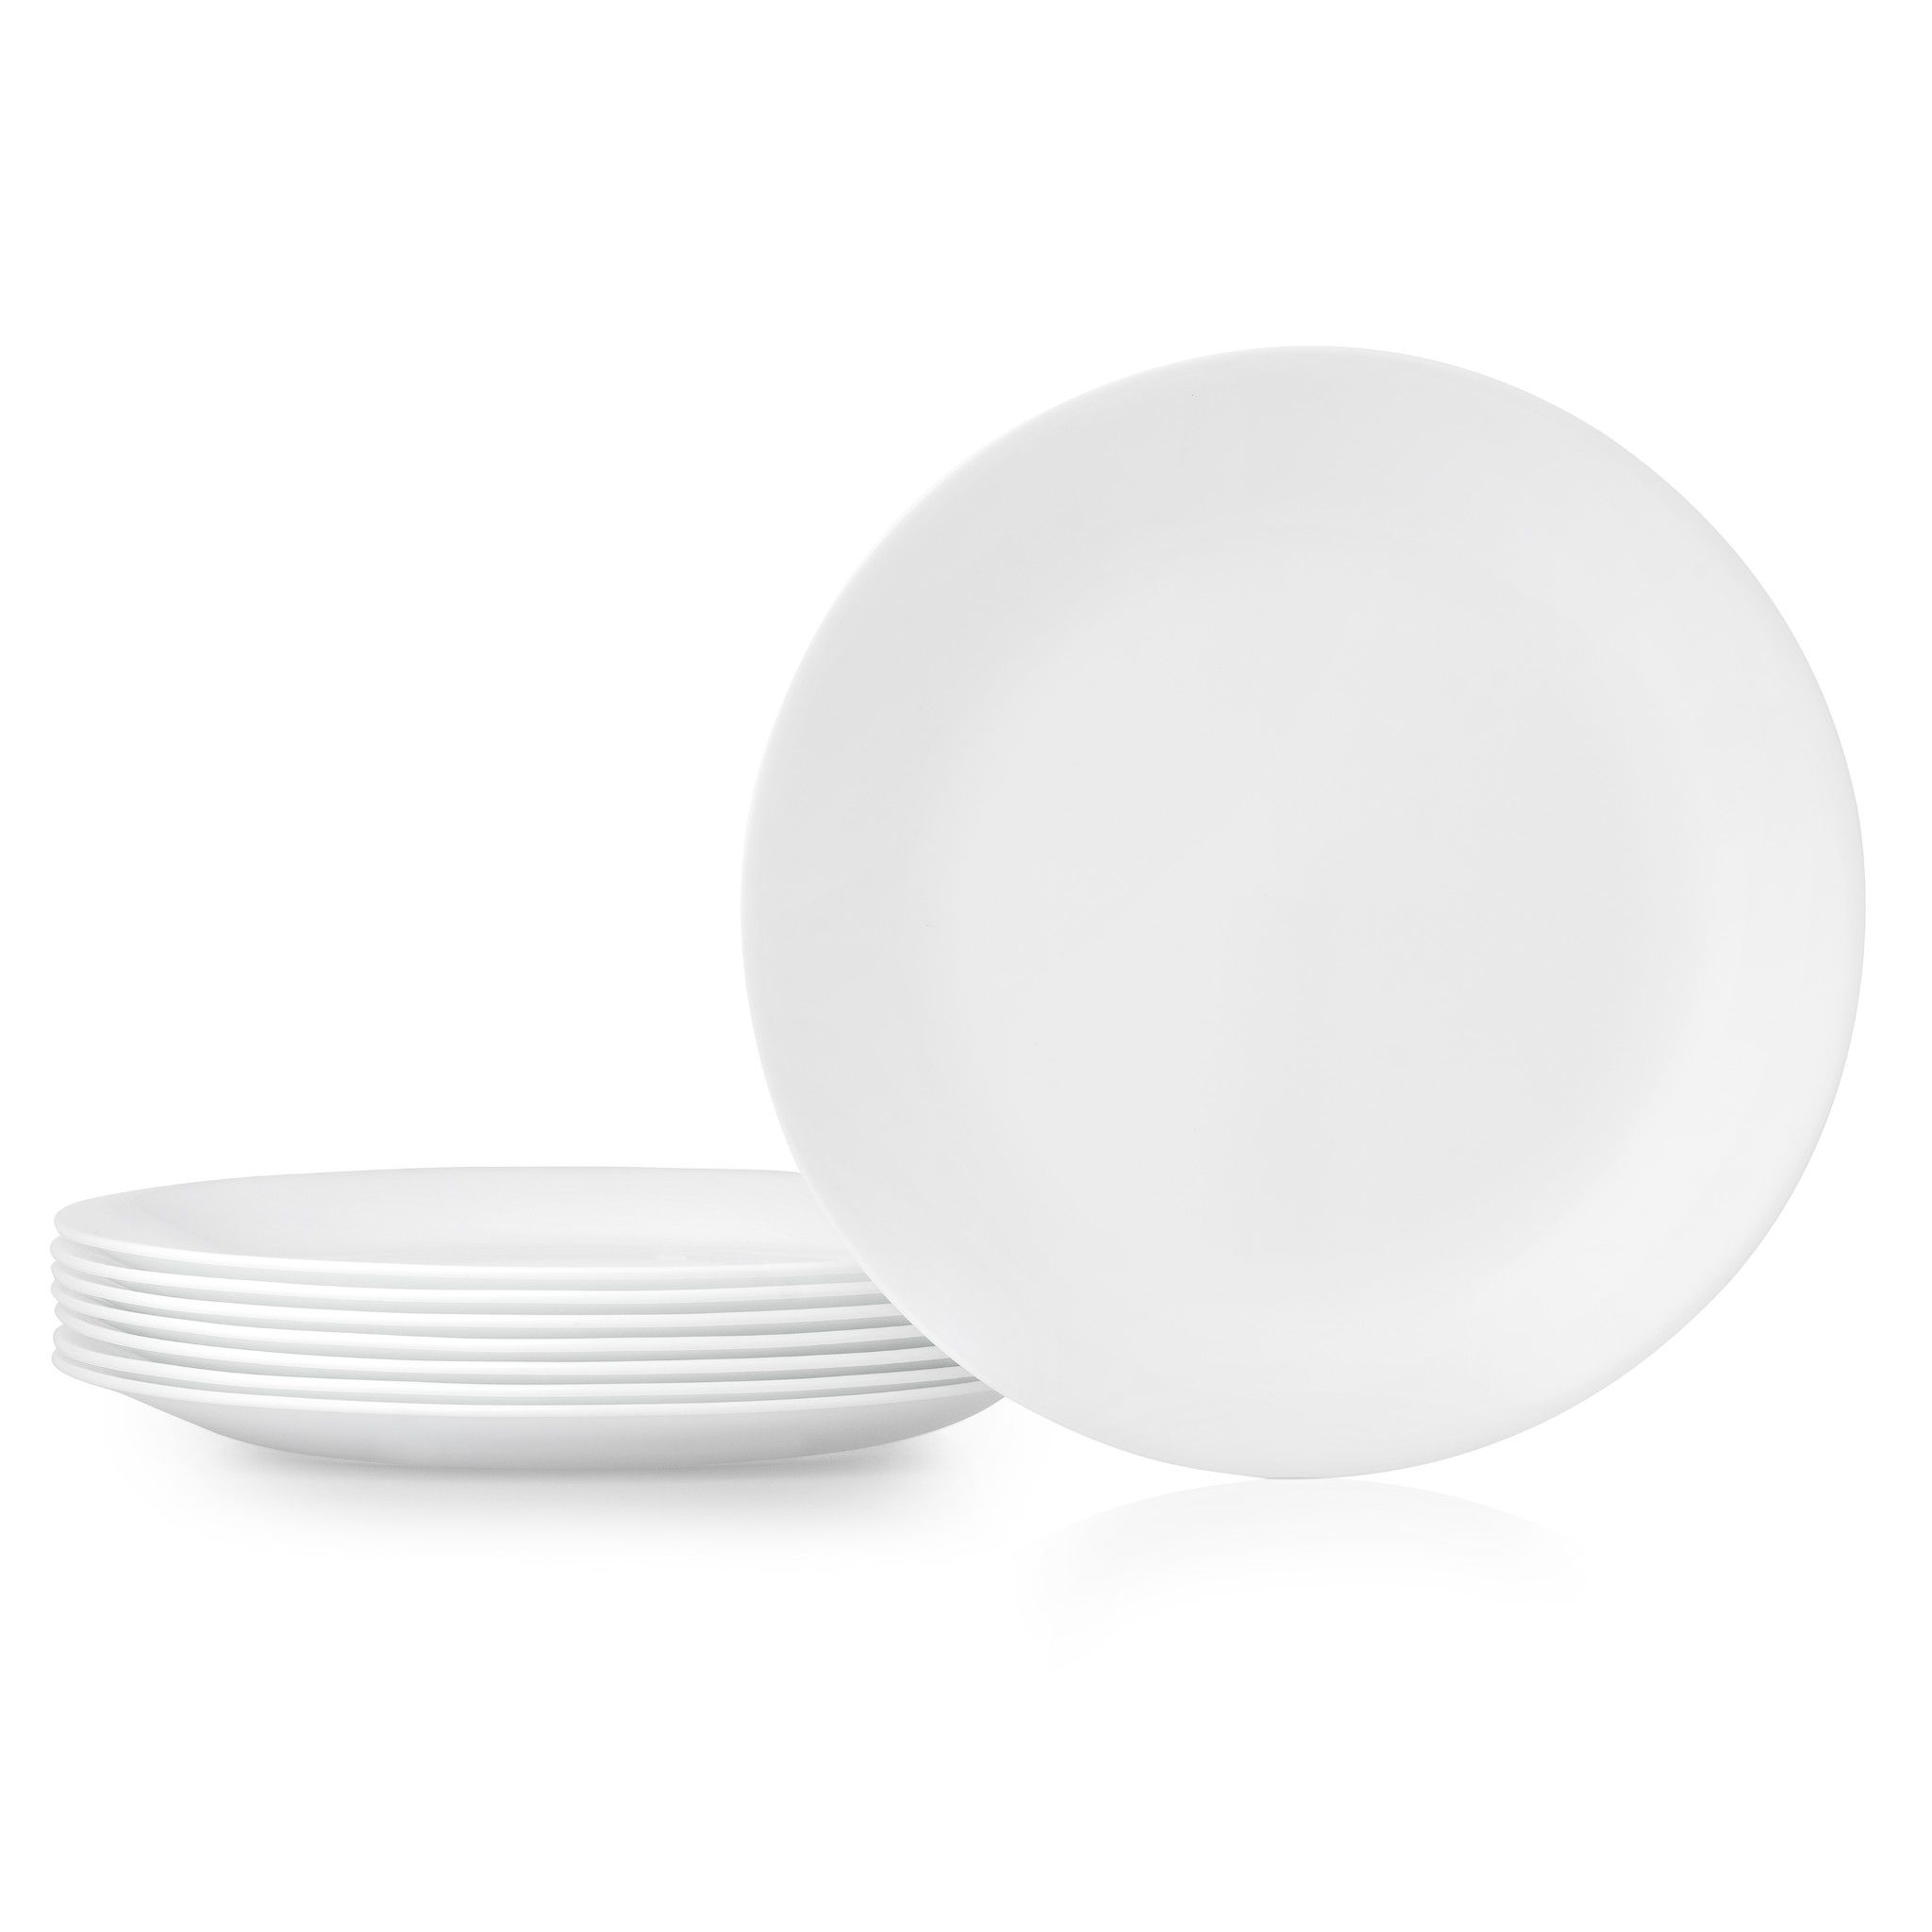 Winter Frost White 10.25 Dinner Plates, 6-pack